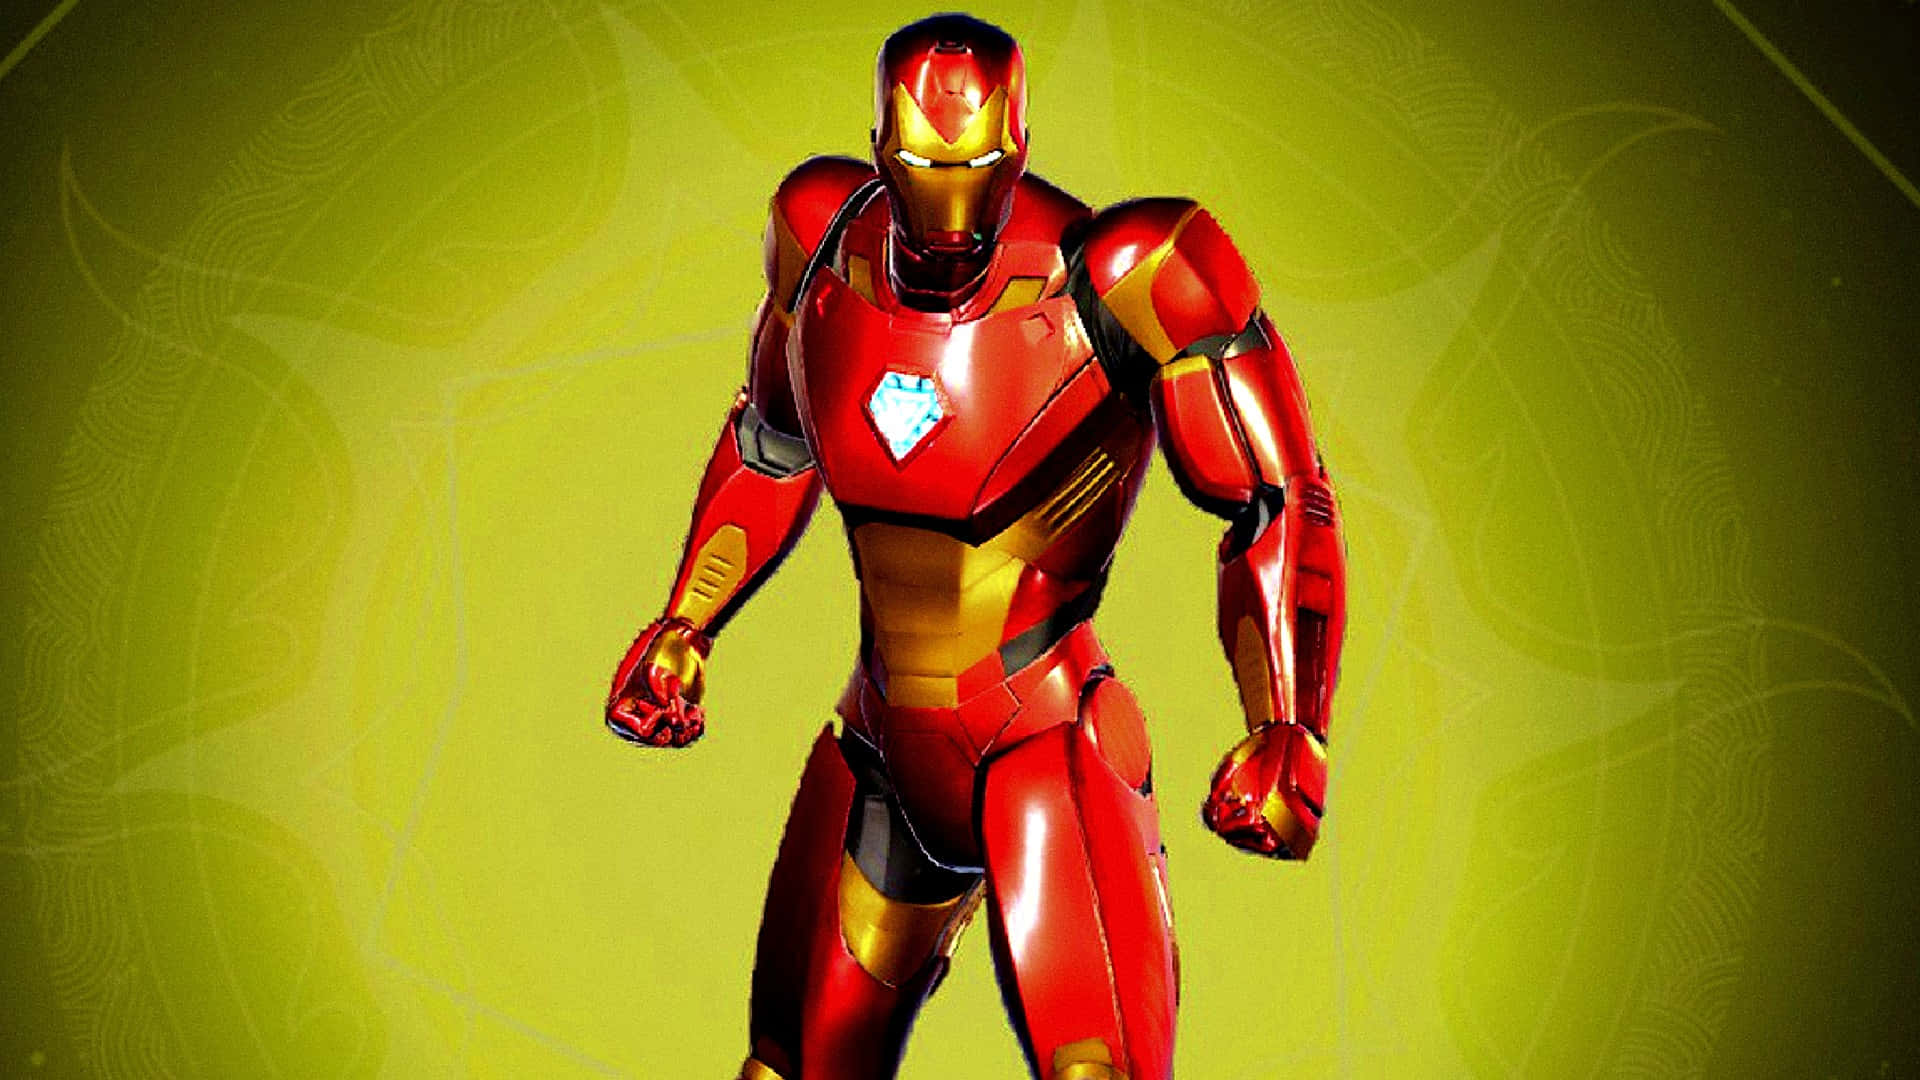 Arte Digital Em 3d Do Iron Man Em Um Fundo Amarelo